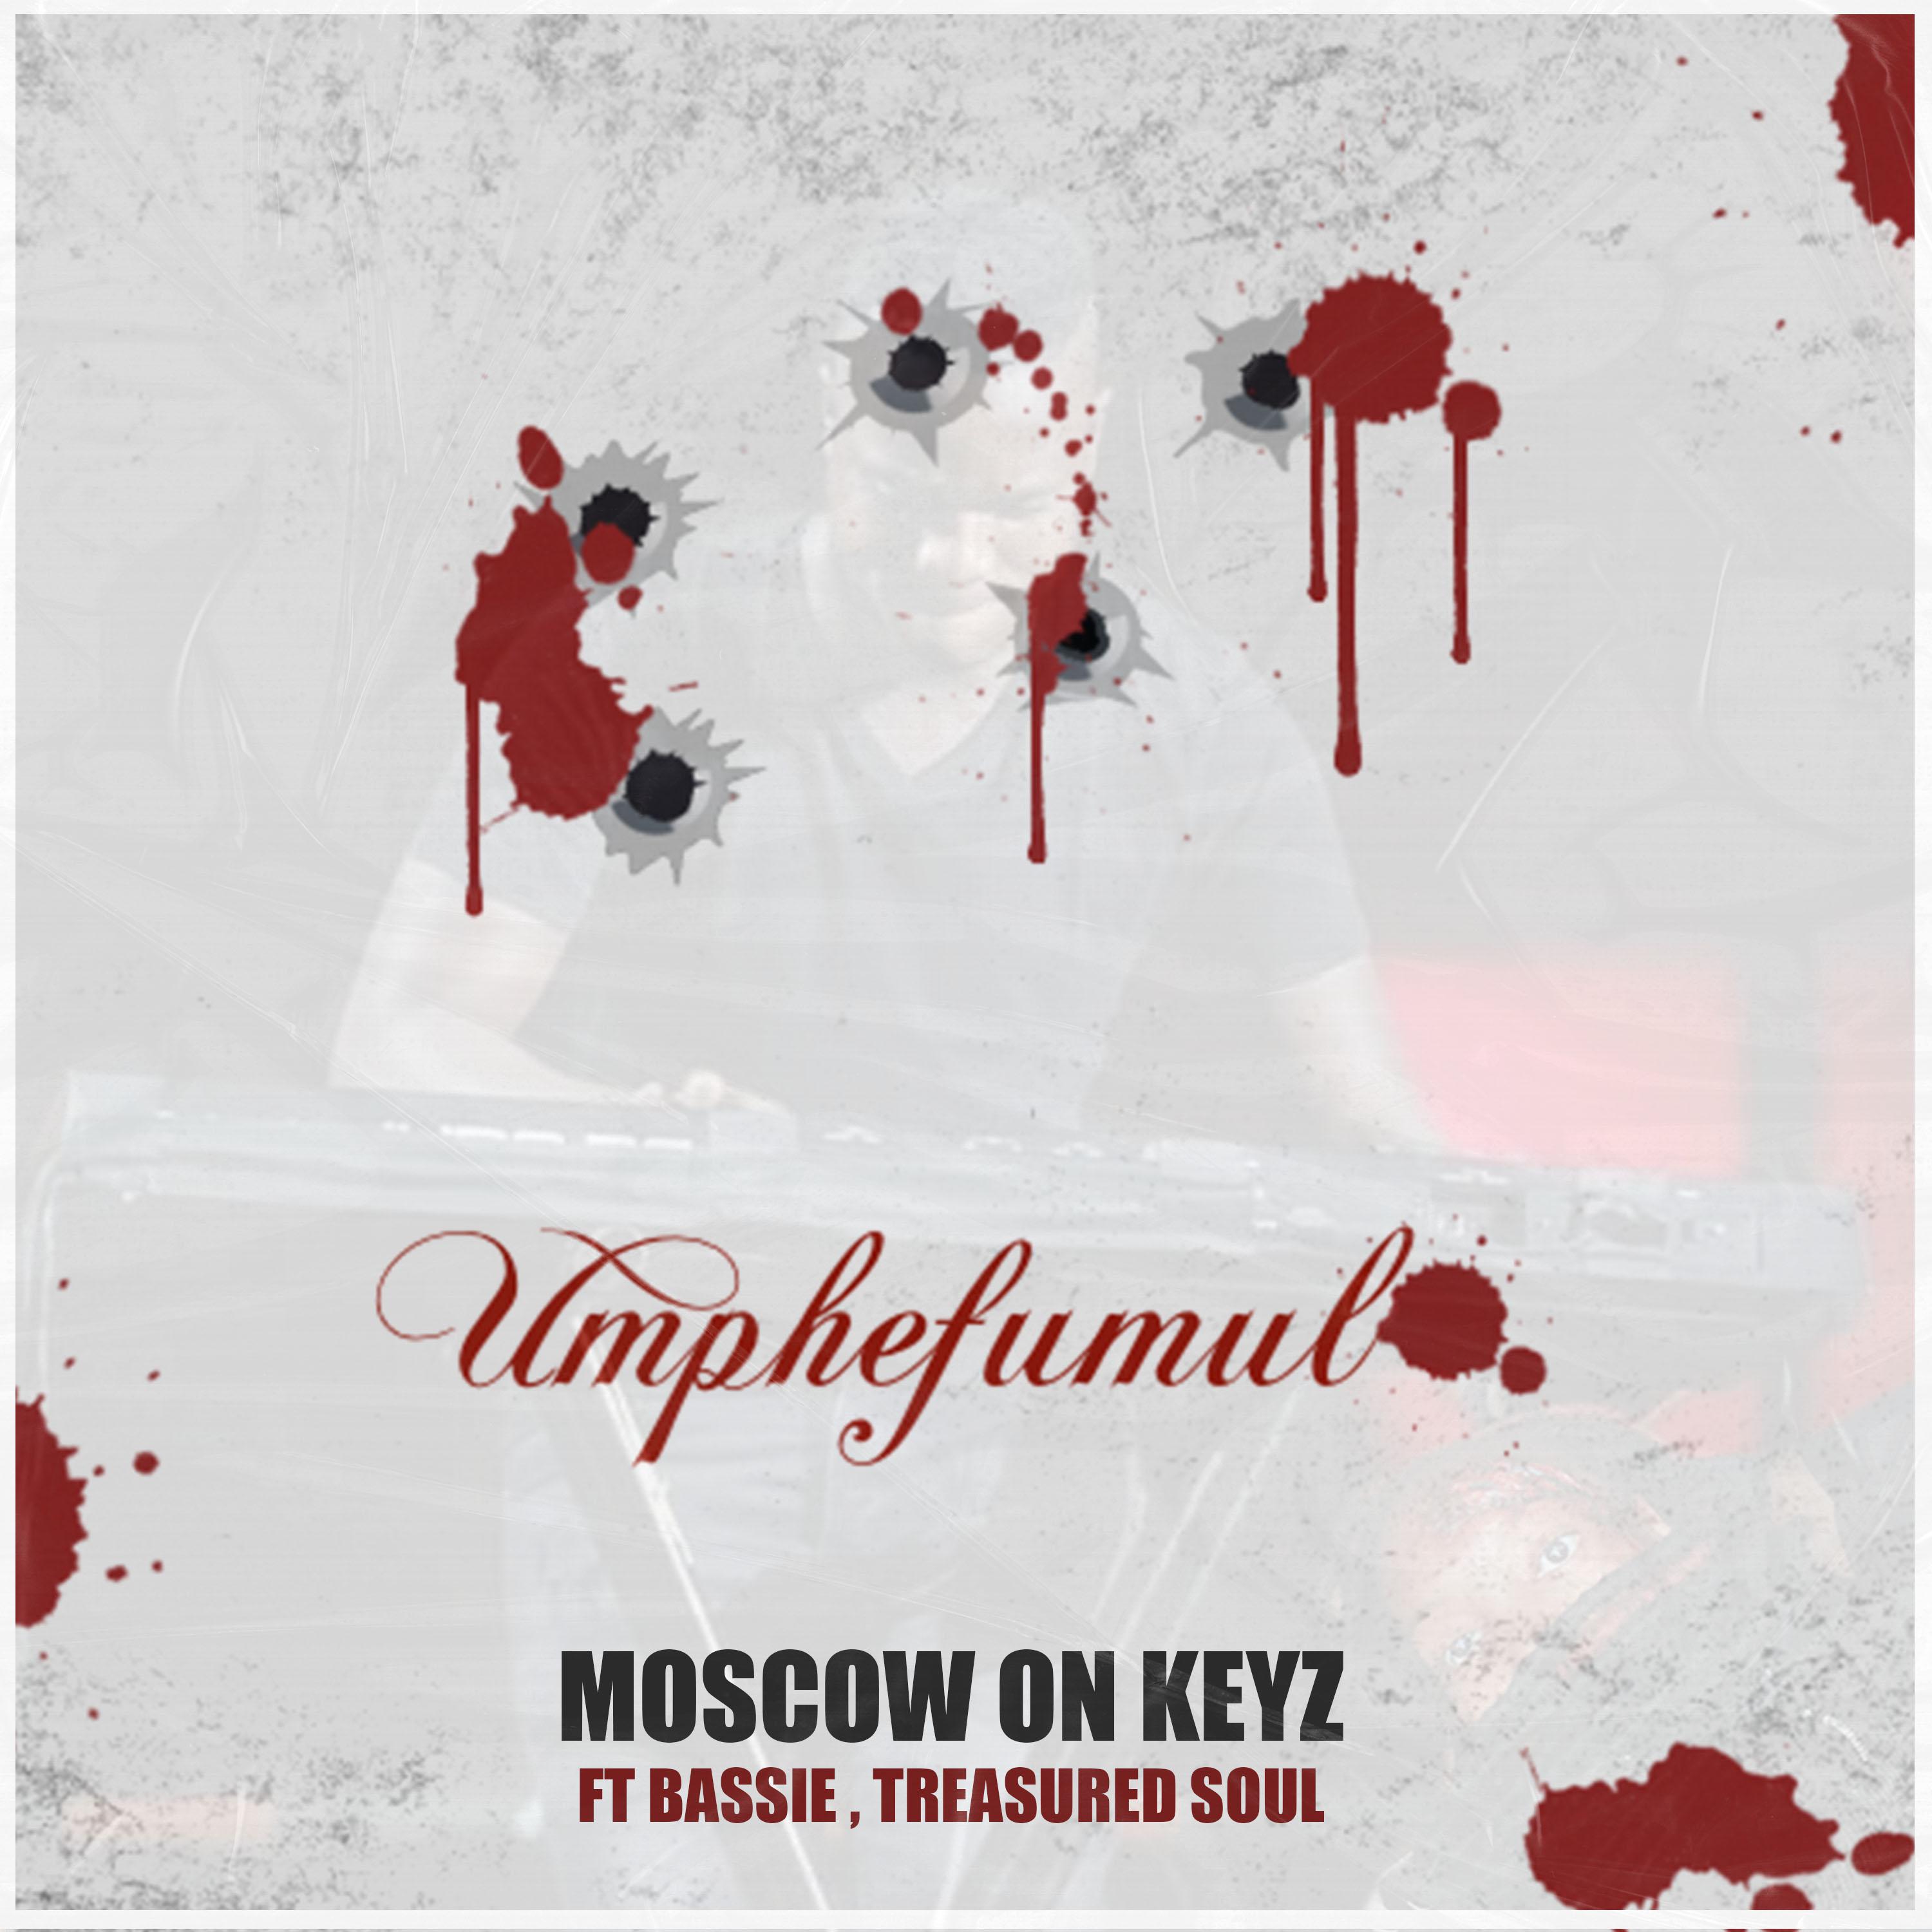 Moscow on Keyz - Umphefumulo (Original Mix)